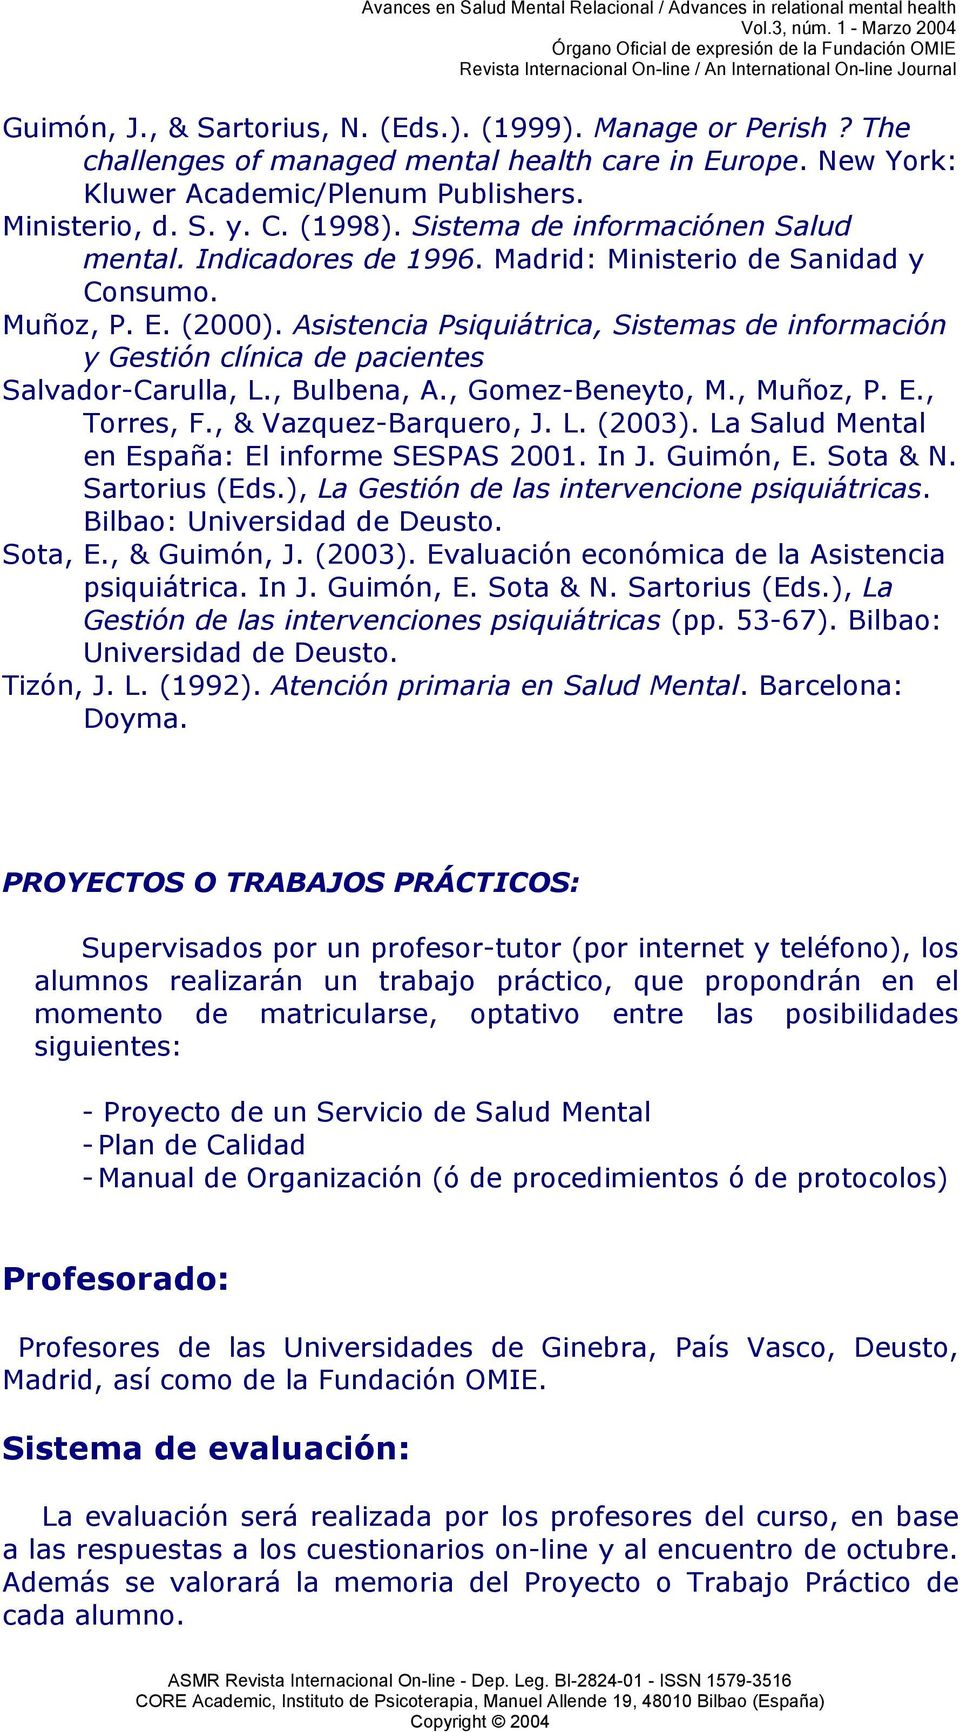 Asistencia Psiquiátrica, Sistemas de información y Gestión clínica de pacientes Salvador-Carulla, L., Bulbena, A., Gomez-Beneyto, M., Muñoz, P. E., Torres, F., & Vazquez-Barquero, J. L. (2003).